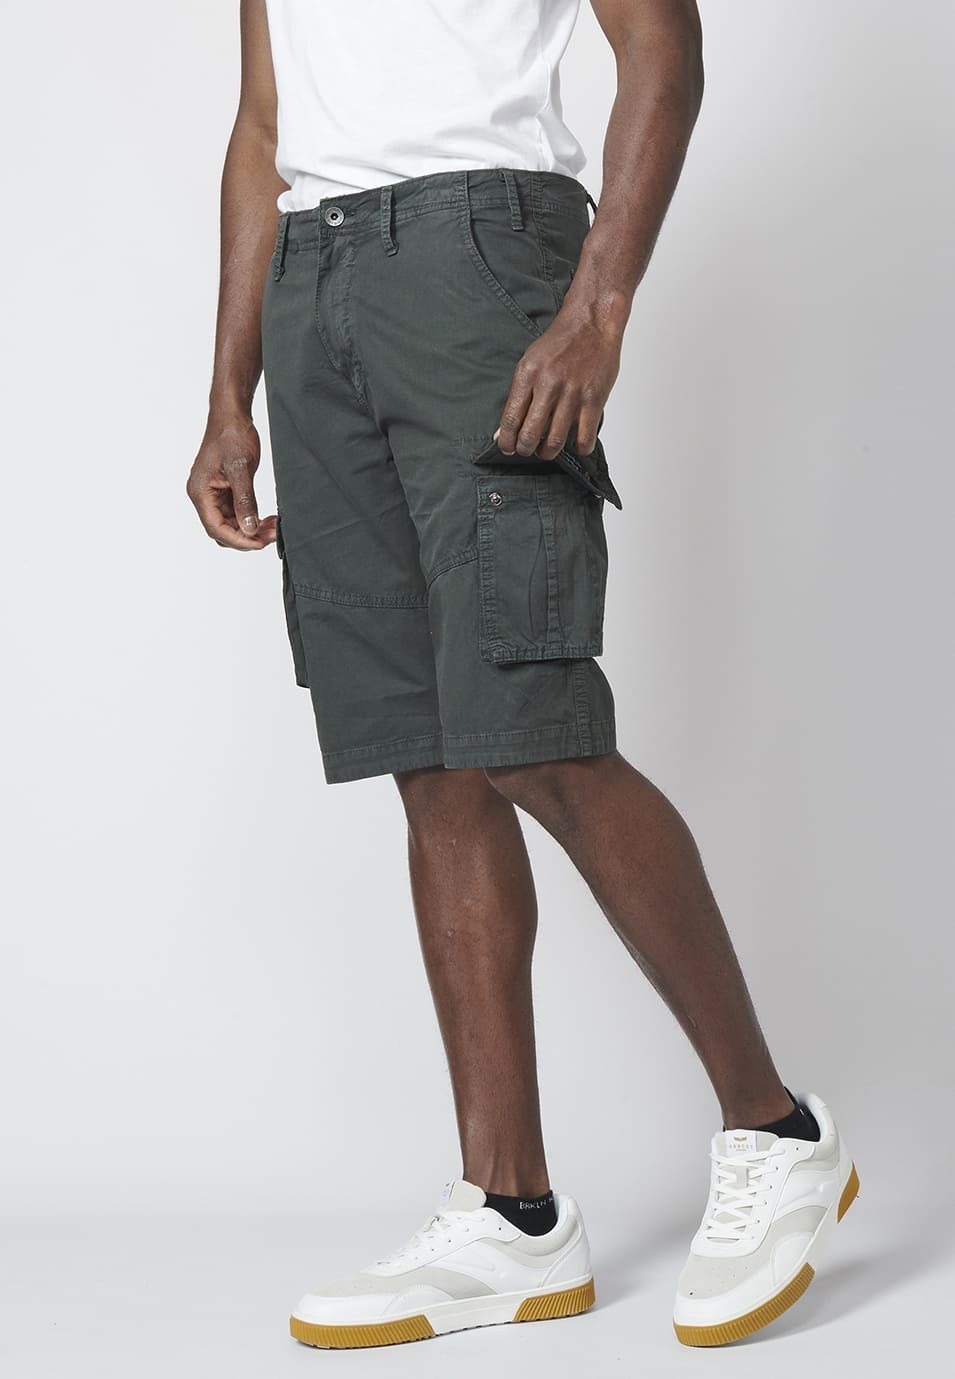 Bermuda pantalón corto estilo cargo para hombre con seis bolsillos color Negro 2